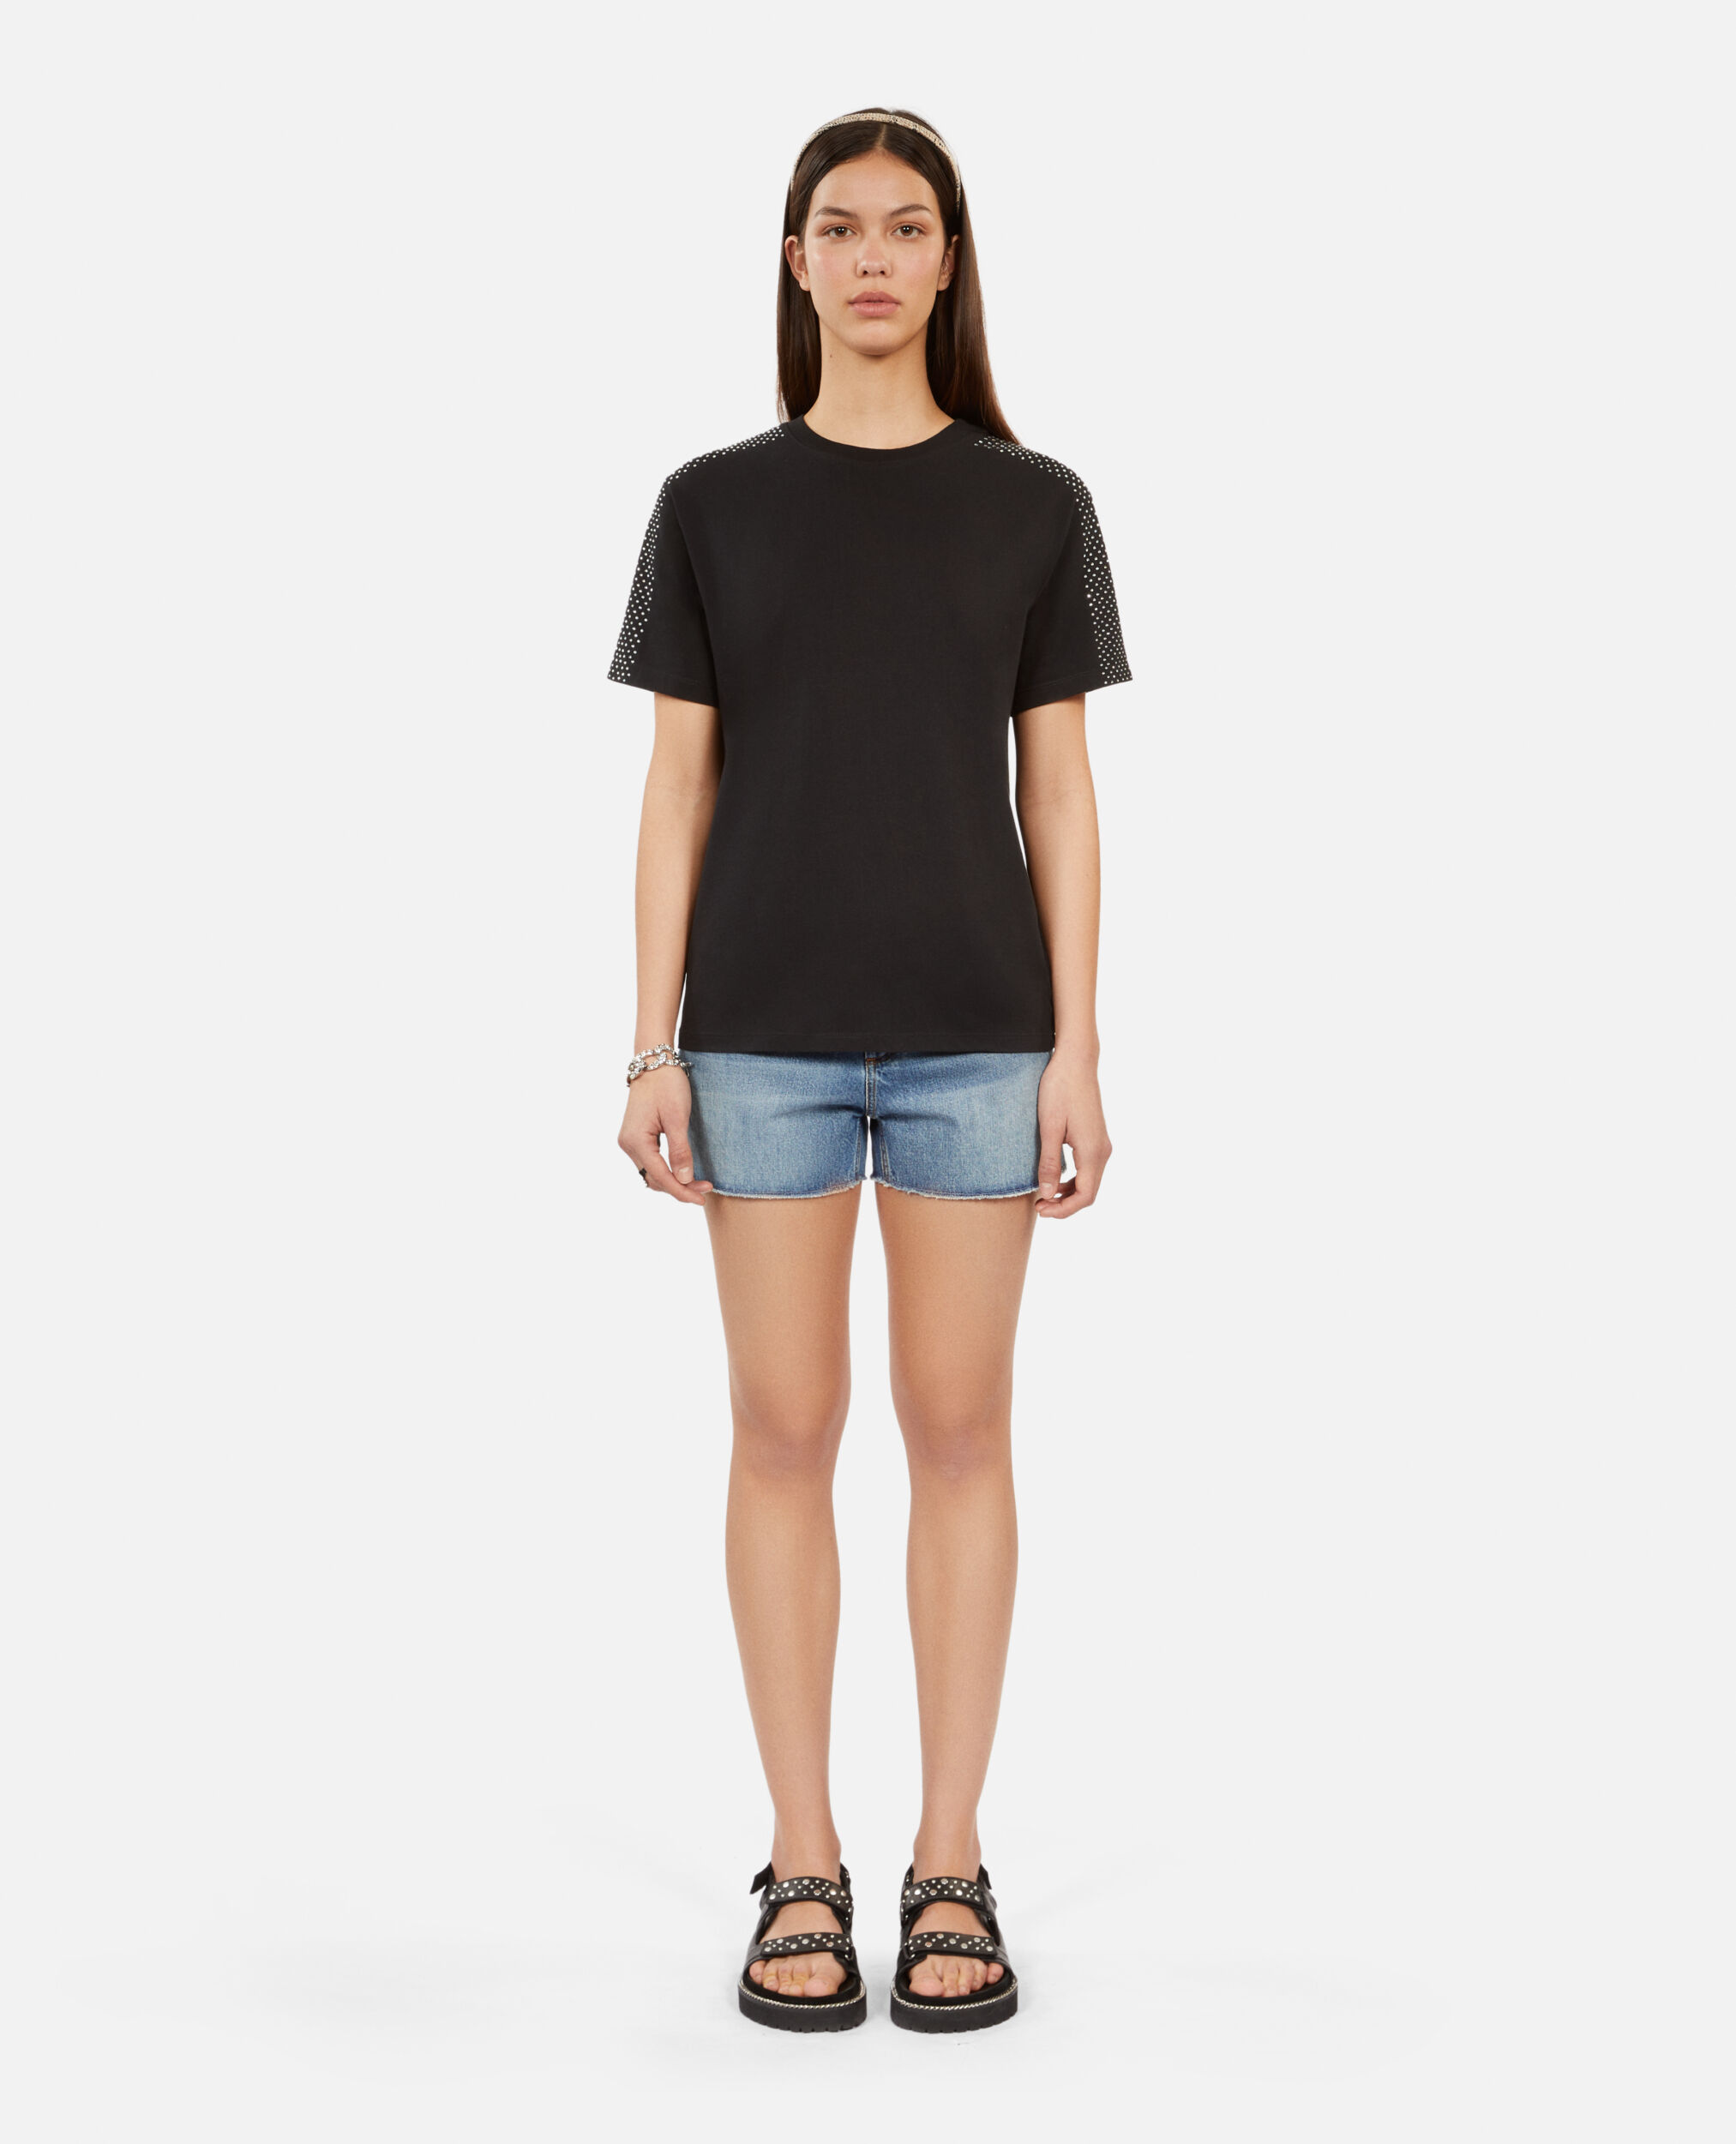 T-shirt Femme noir avec strass, BLACK, hi-res image number null